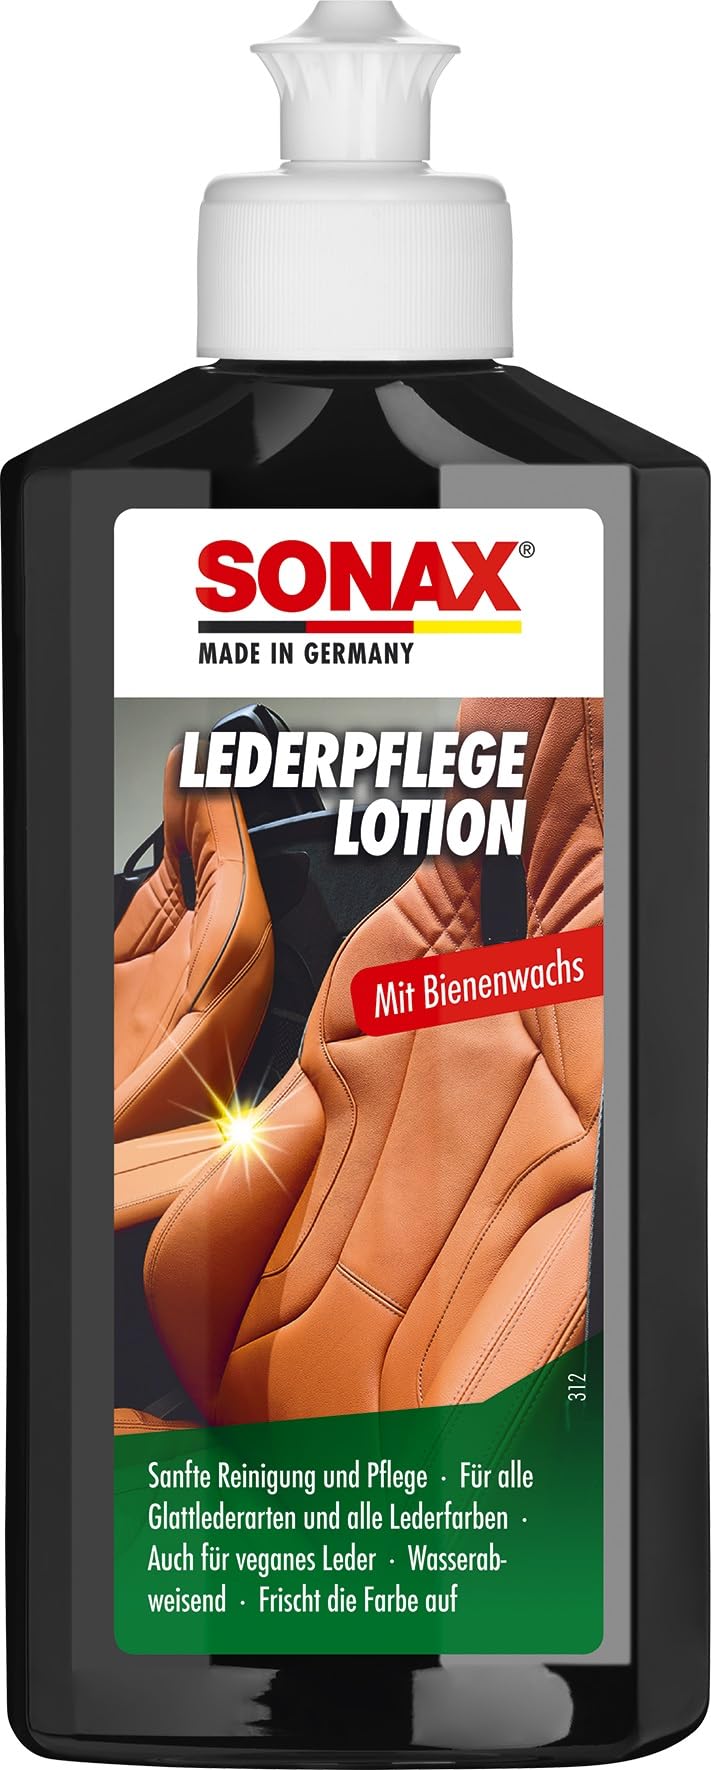 SONAX LederPflegeLotion (250 ml) wasserabweisende Lederpflege mit Bienenwachs für eine sanfte Reinigung und Pflege von Glattleder und Kunstleder | Art-Nr. 02911410 von SONAX